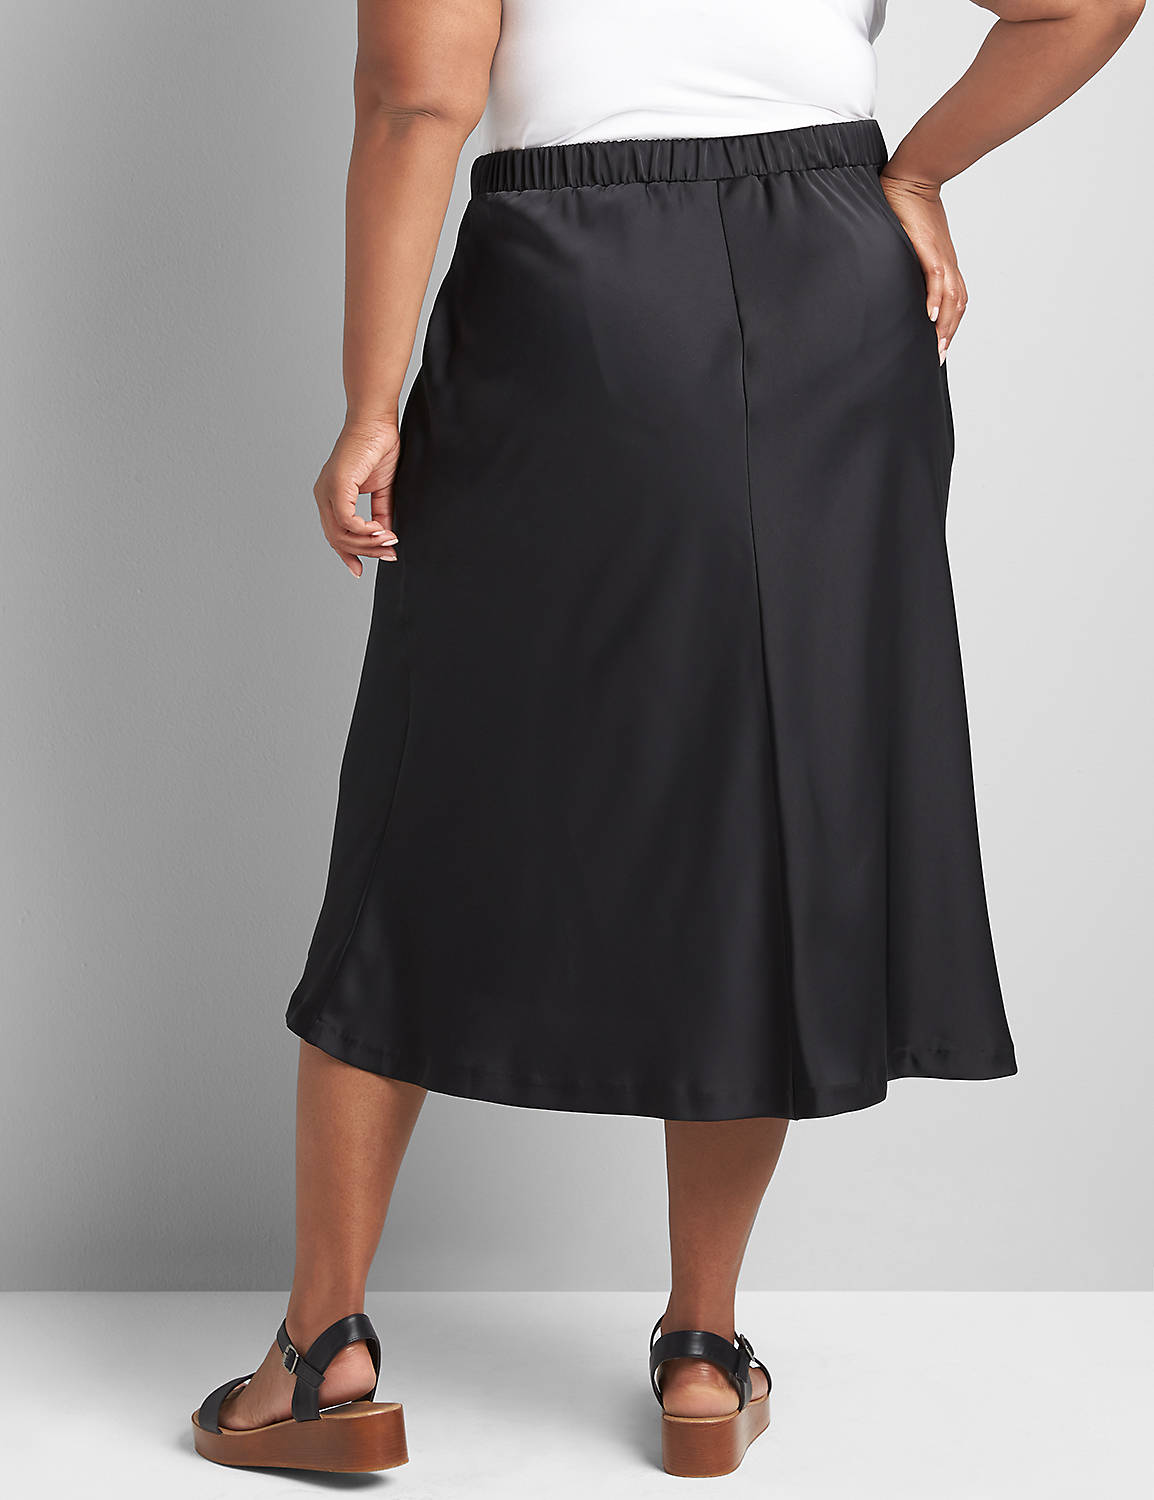 Satin Slip Skirt Product Image 2